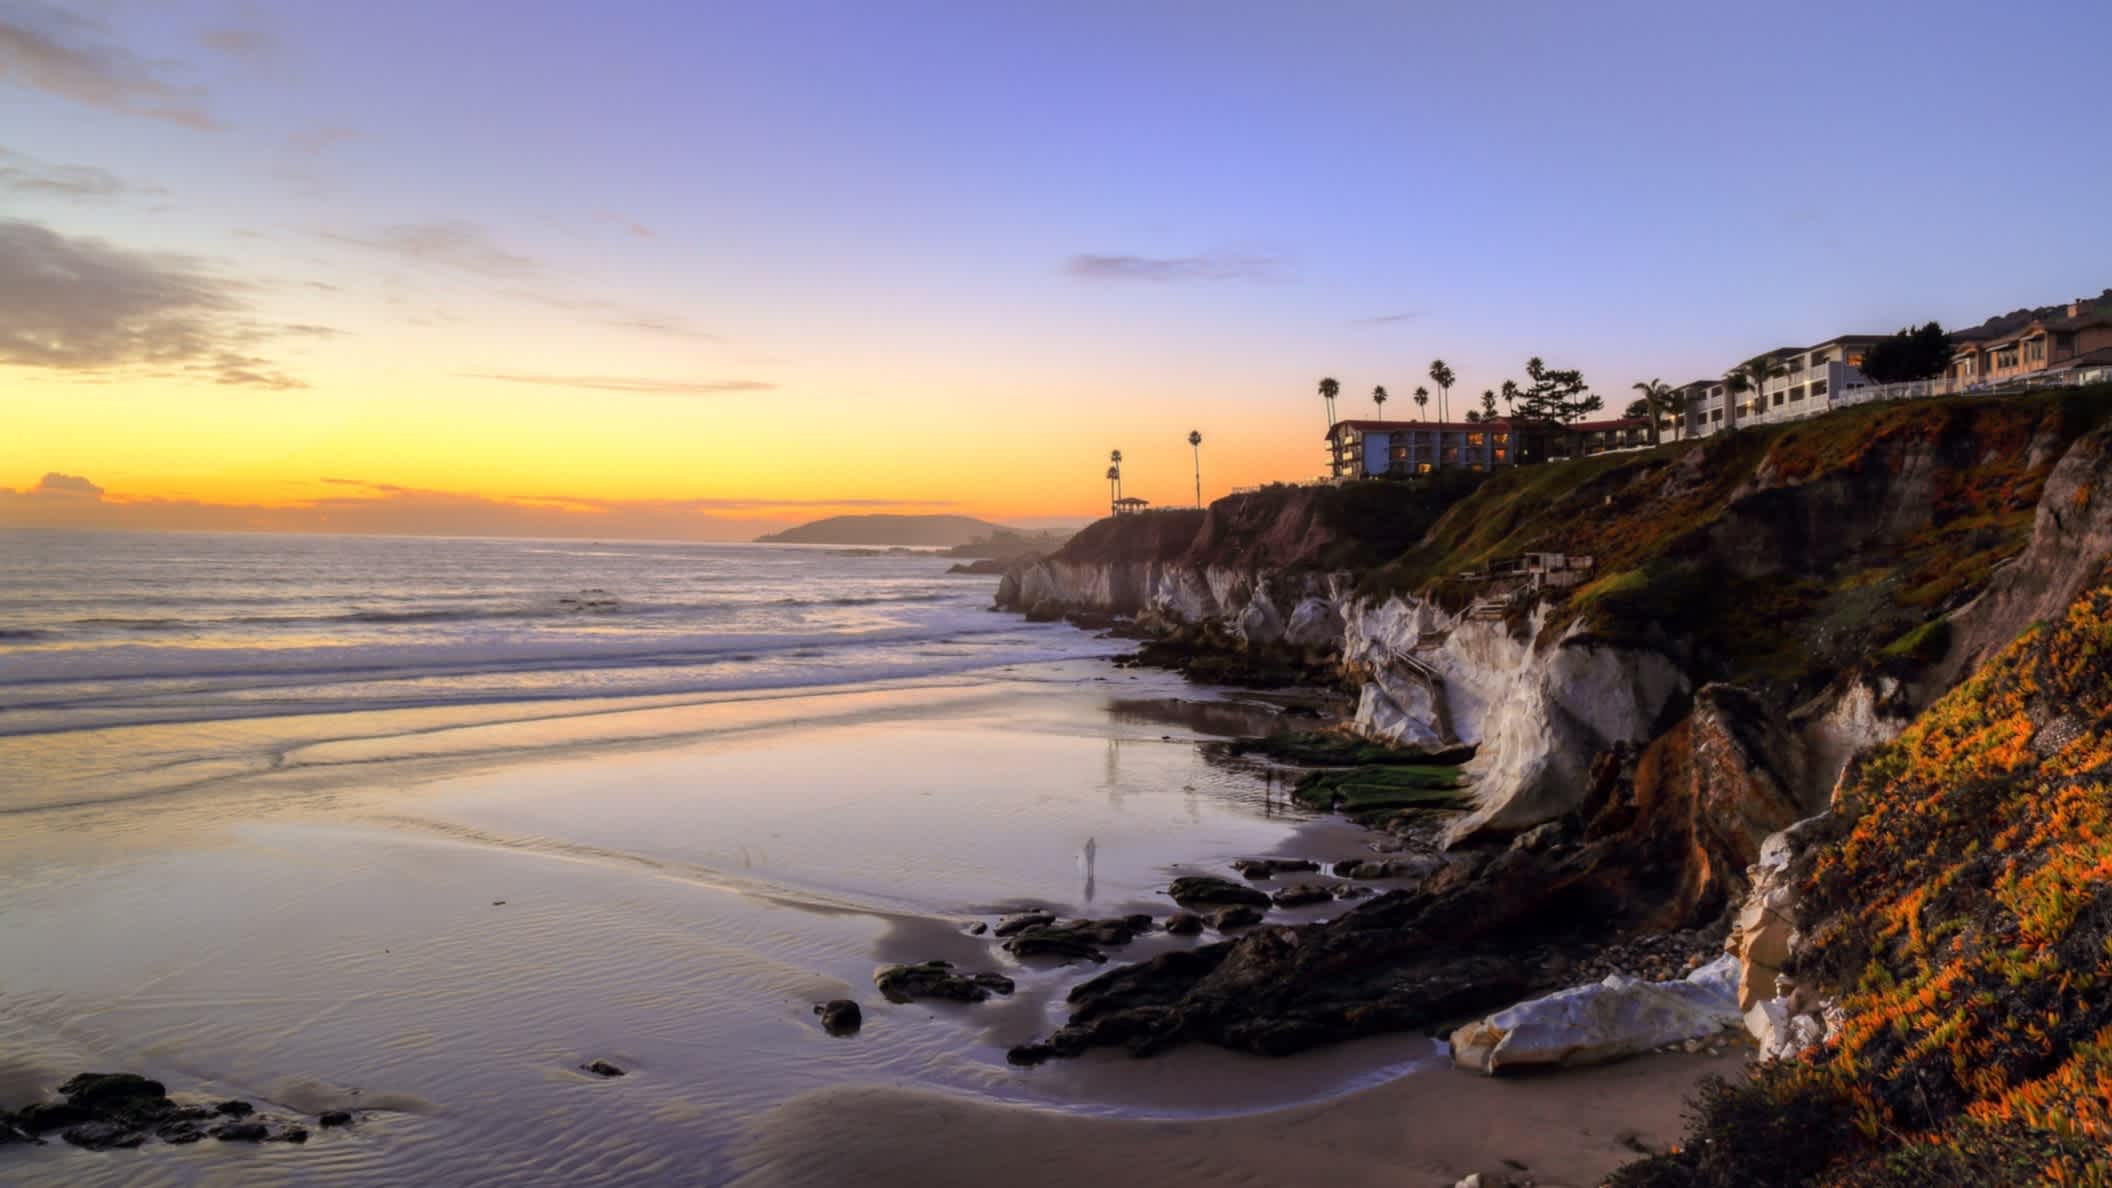 Der Strand Pismo State Beach, Pismo Beach, Kalifornien, USA bei herrlichem Abendrot und mit Blick auf das Meer sowie entlang der bewohnten Steilküste.